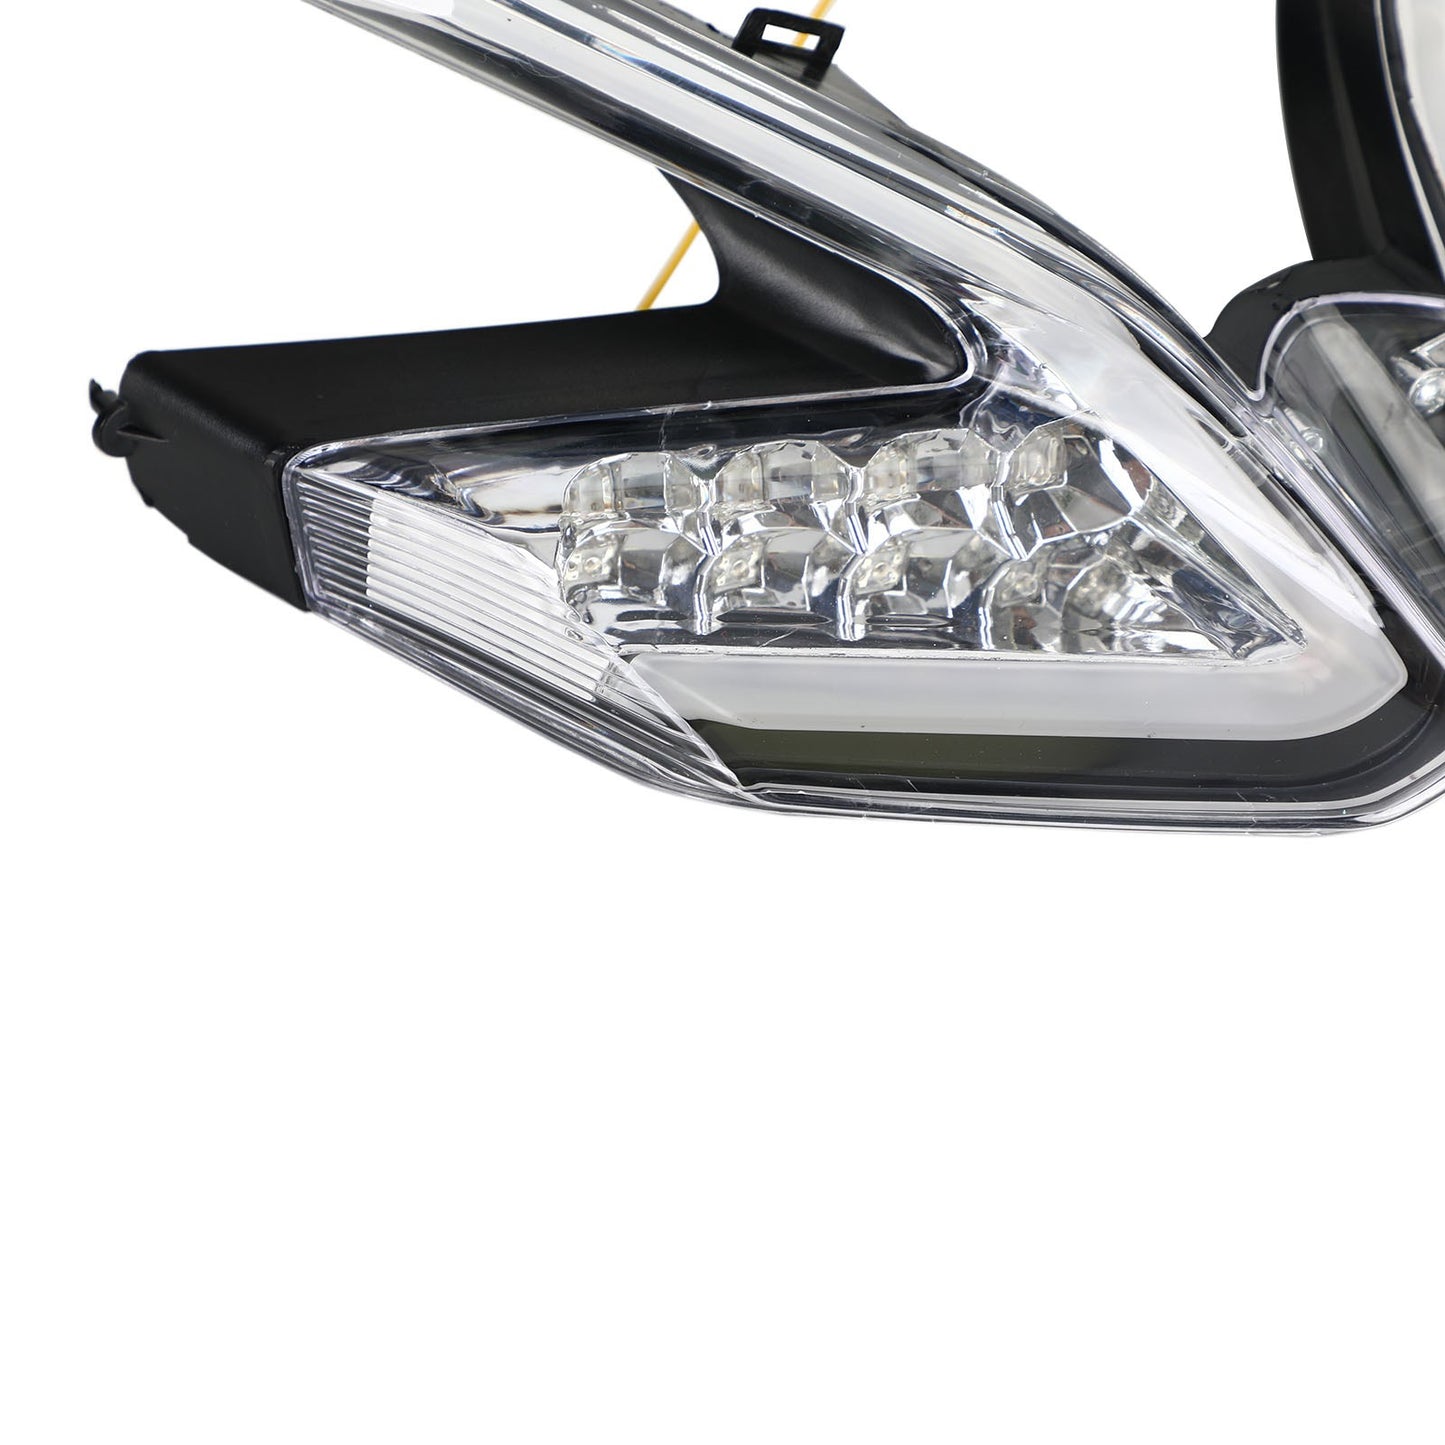 Ducati 959 899 1299 1199 Panigale LED Clignotants intégrés pour feux arrière